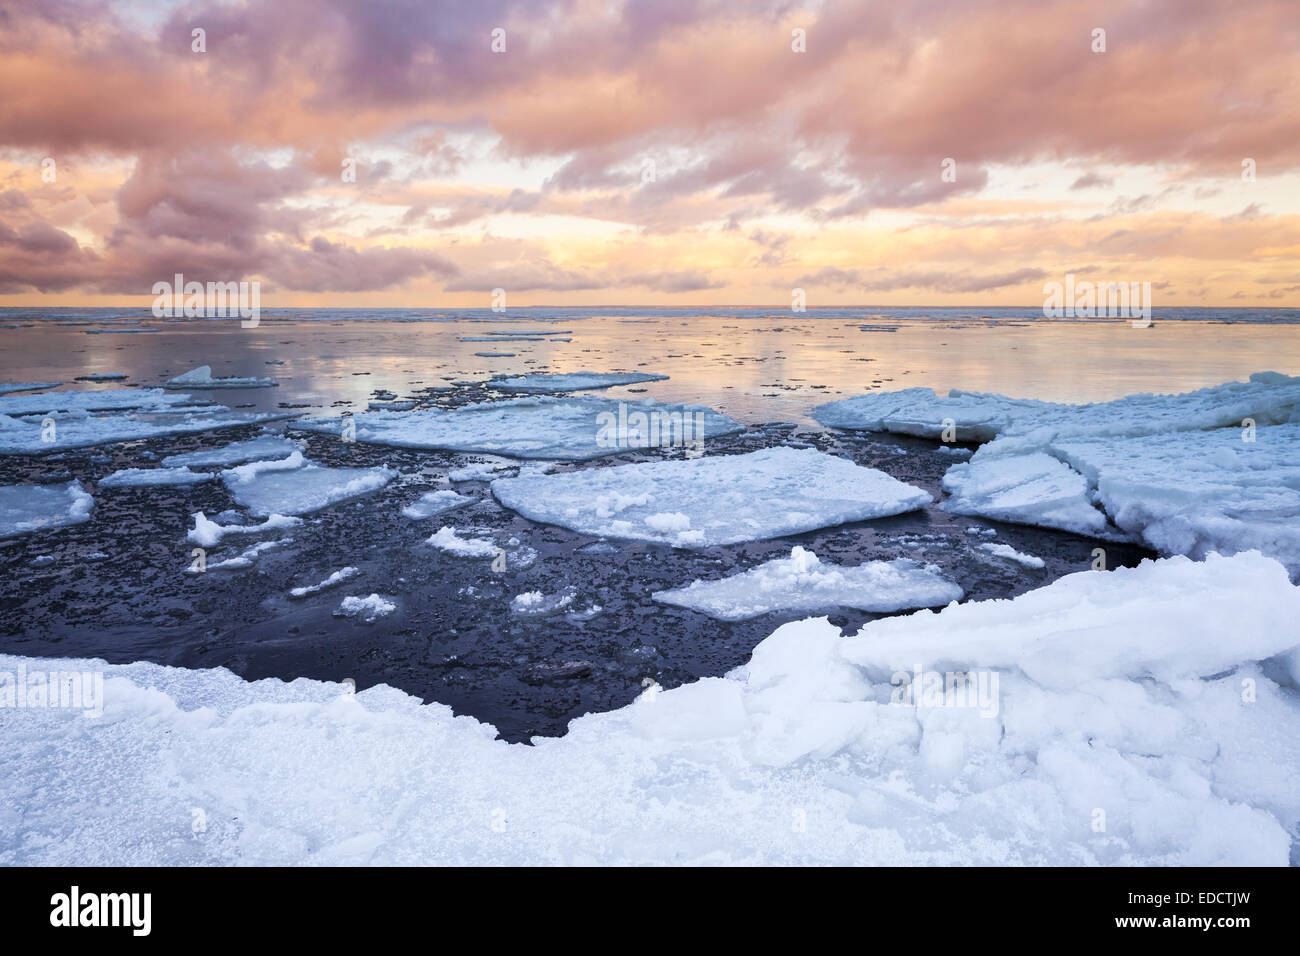 Paysage de mer d'hiver avec de la glace flottante de couleurs vives et ciel nuageux. Golfe de Finlande, Russie Banque D'Images